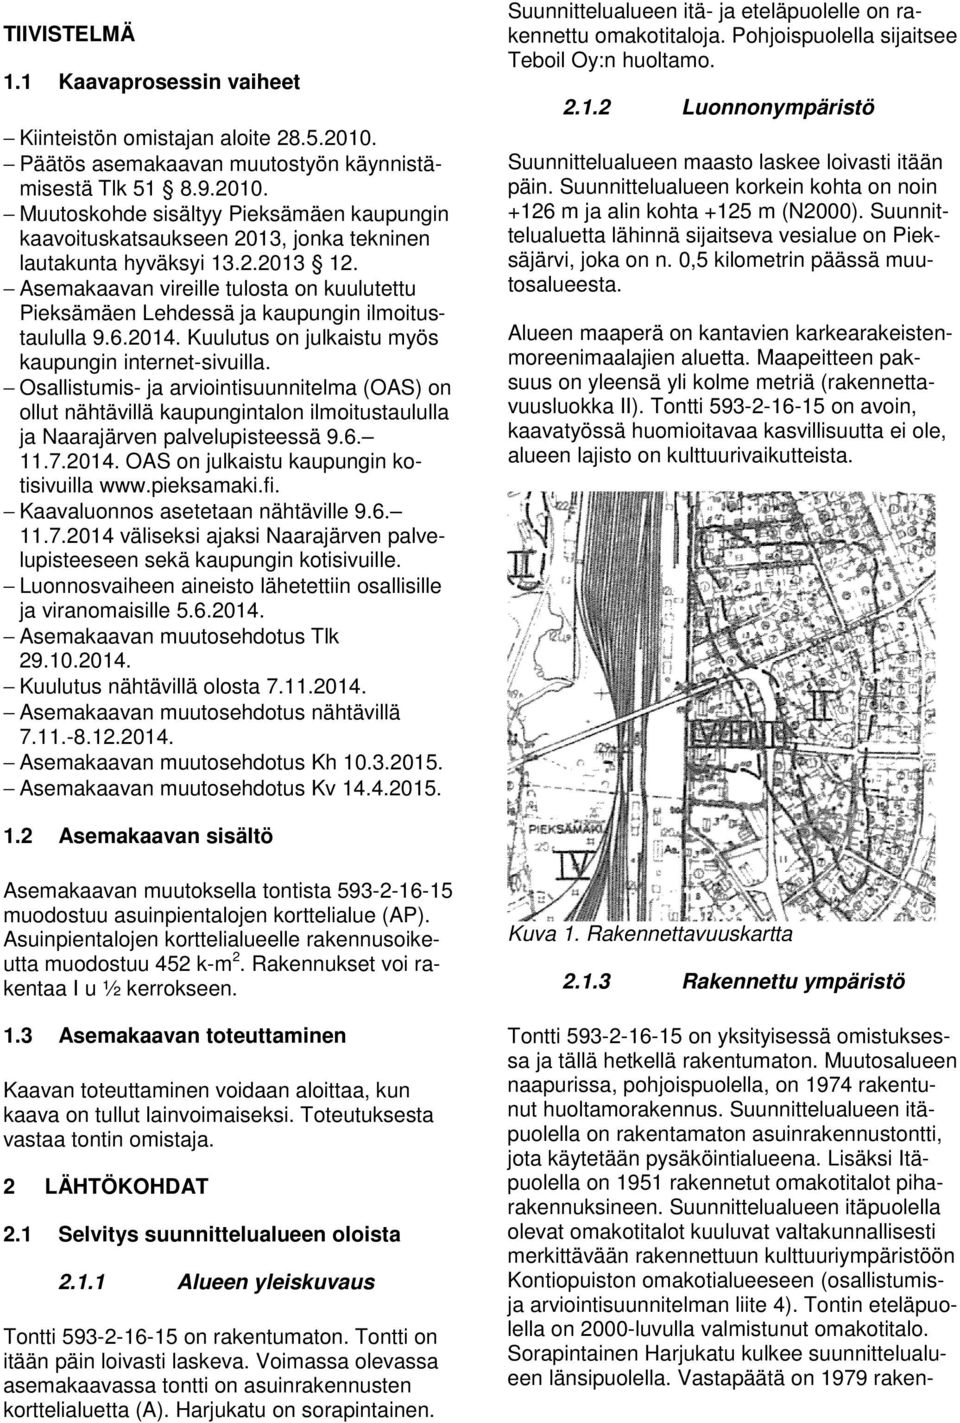 Osallisumis- ja arvioinisuunnielma (OAS) on ollu nähävillä kaupunginalon ilmoiusaululla ja Naarajärven palvelupiseessä 9.6. 11.7.2014. OAS on julkaisu kaupungin koisivuilla www.pieksamaki.fi.